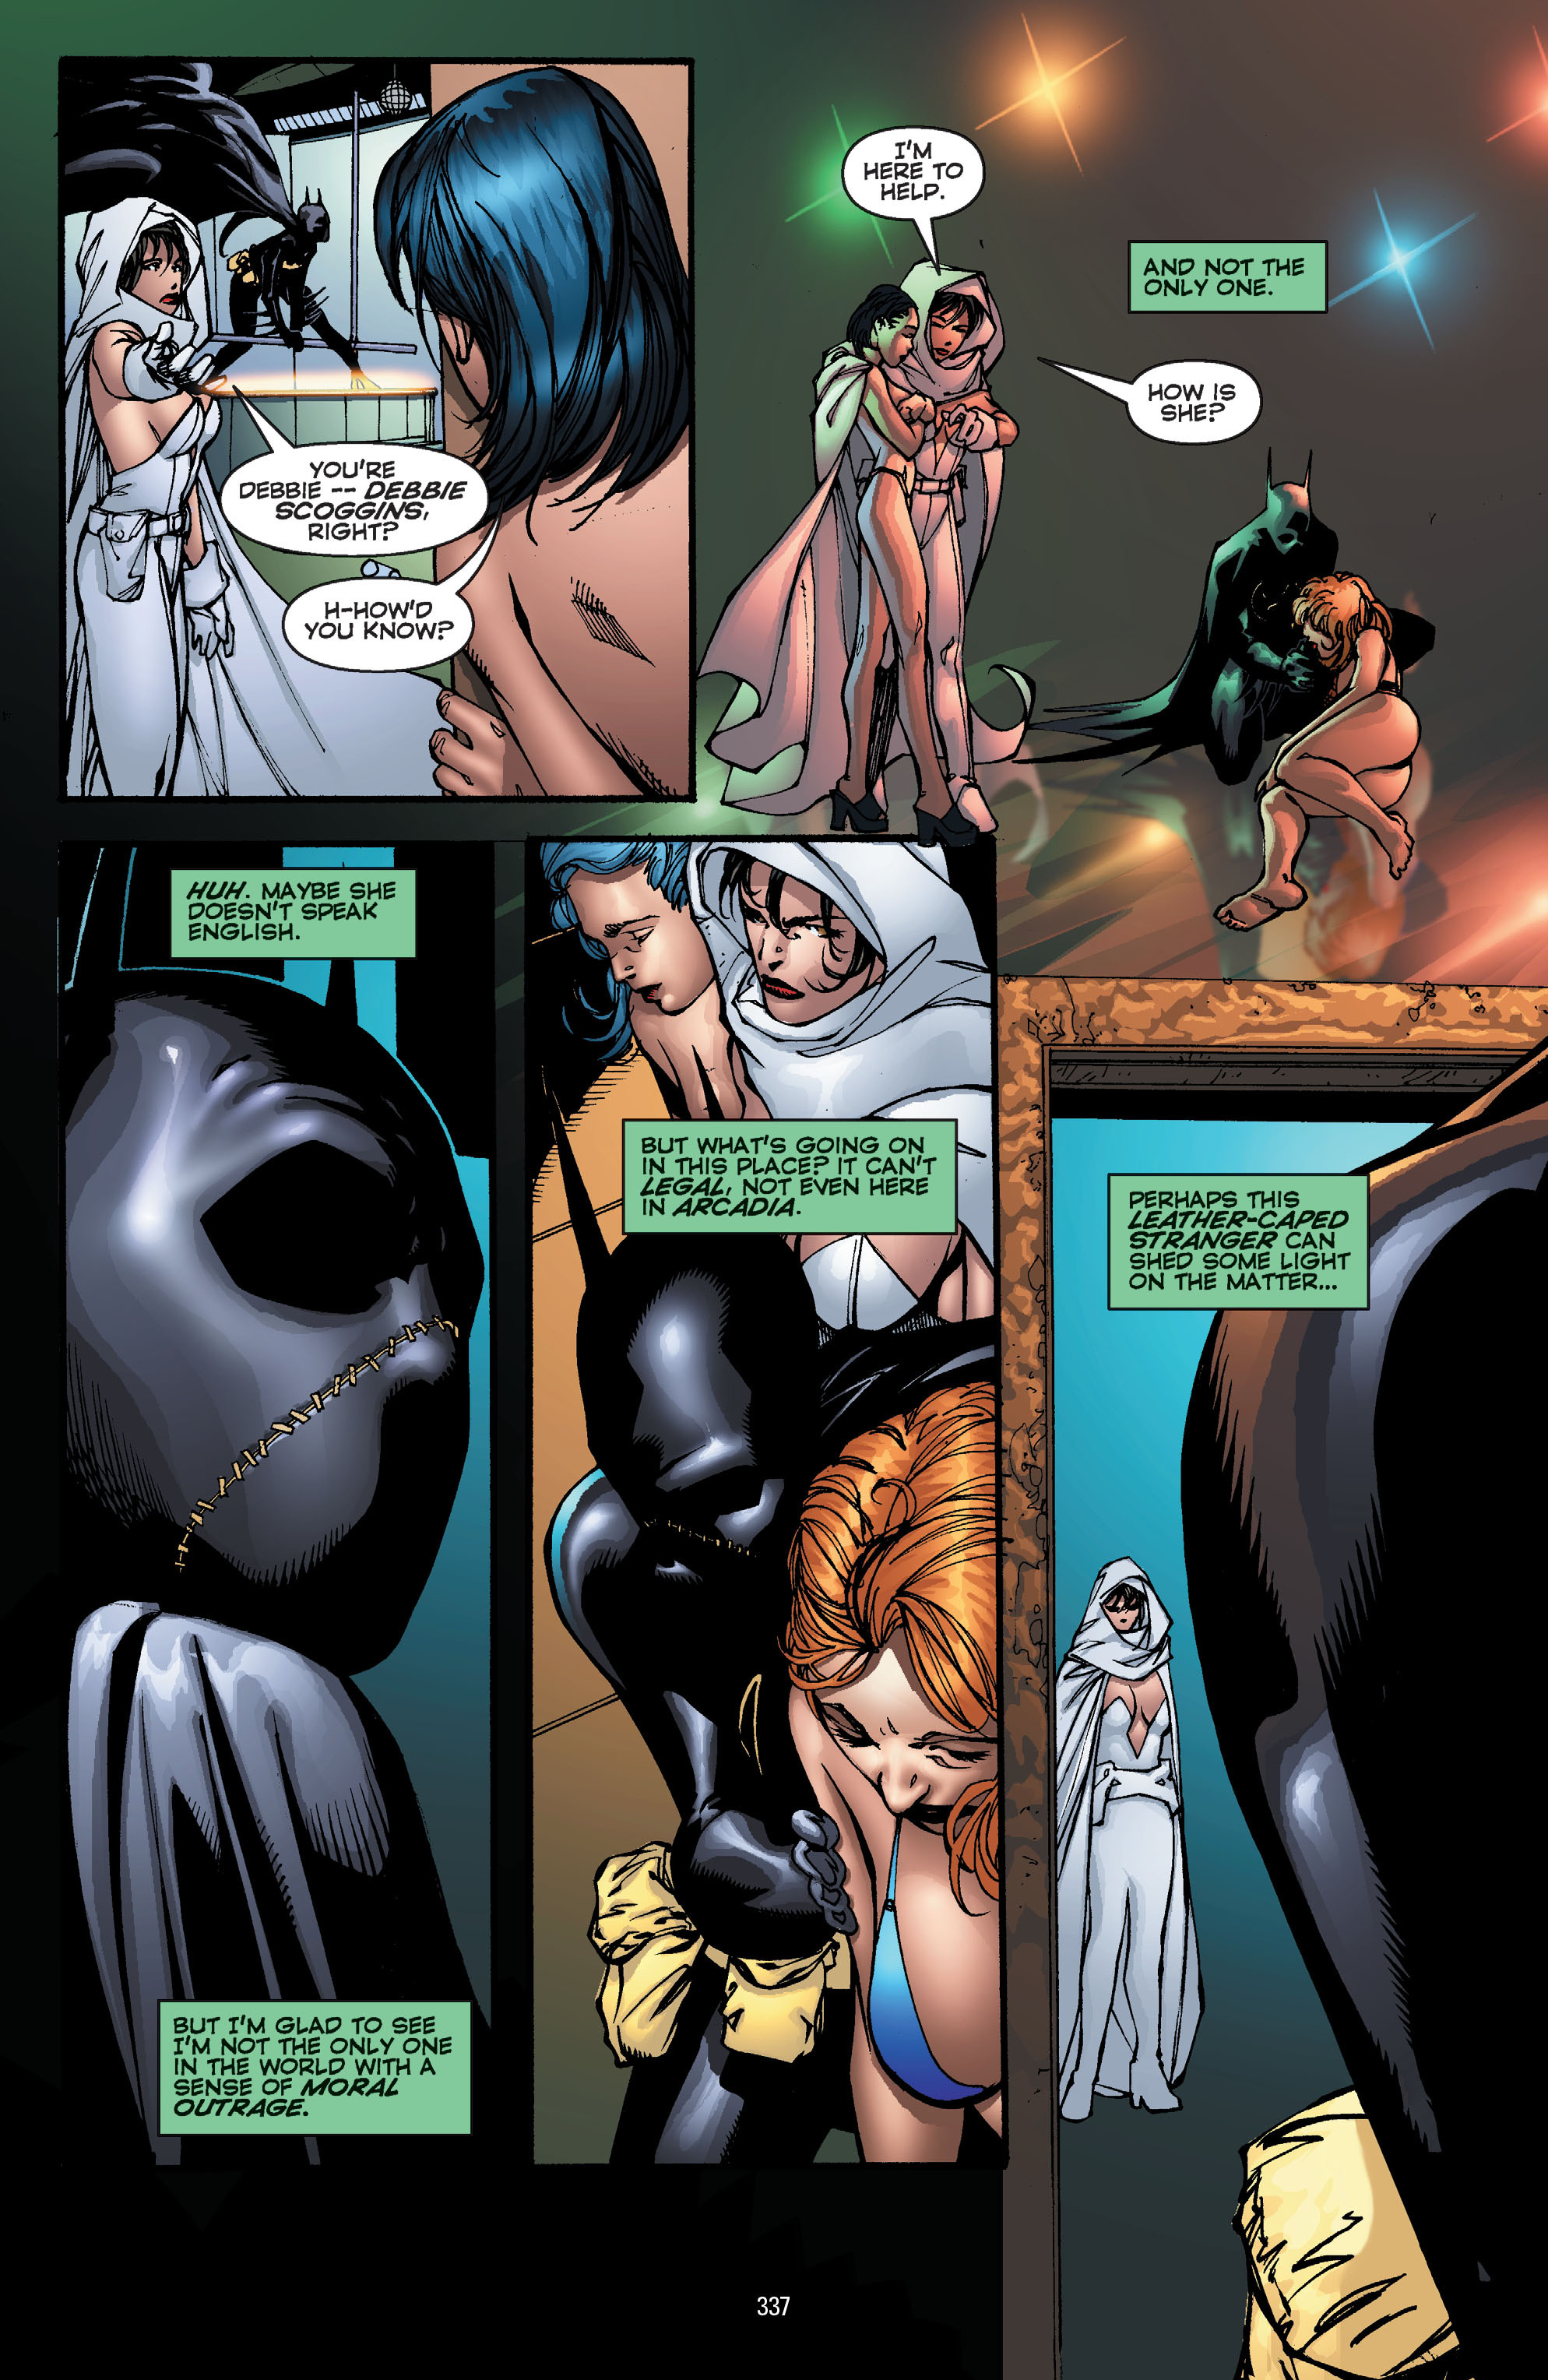 DC Comics/Dark Horse Comics: Justice League Full #1 - English 327